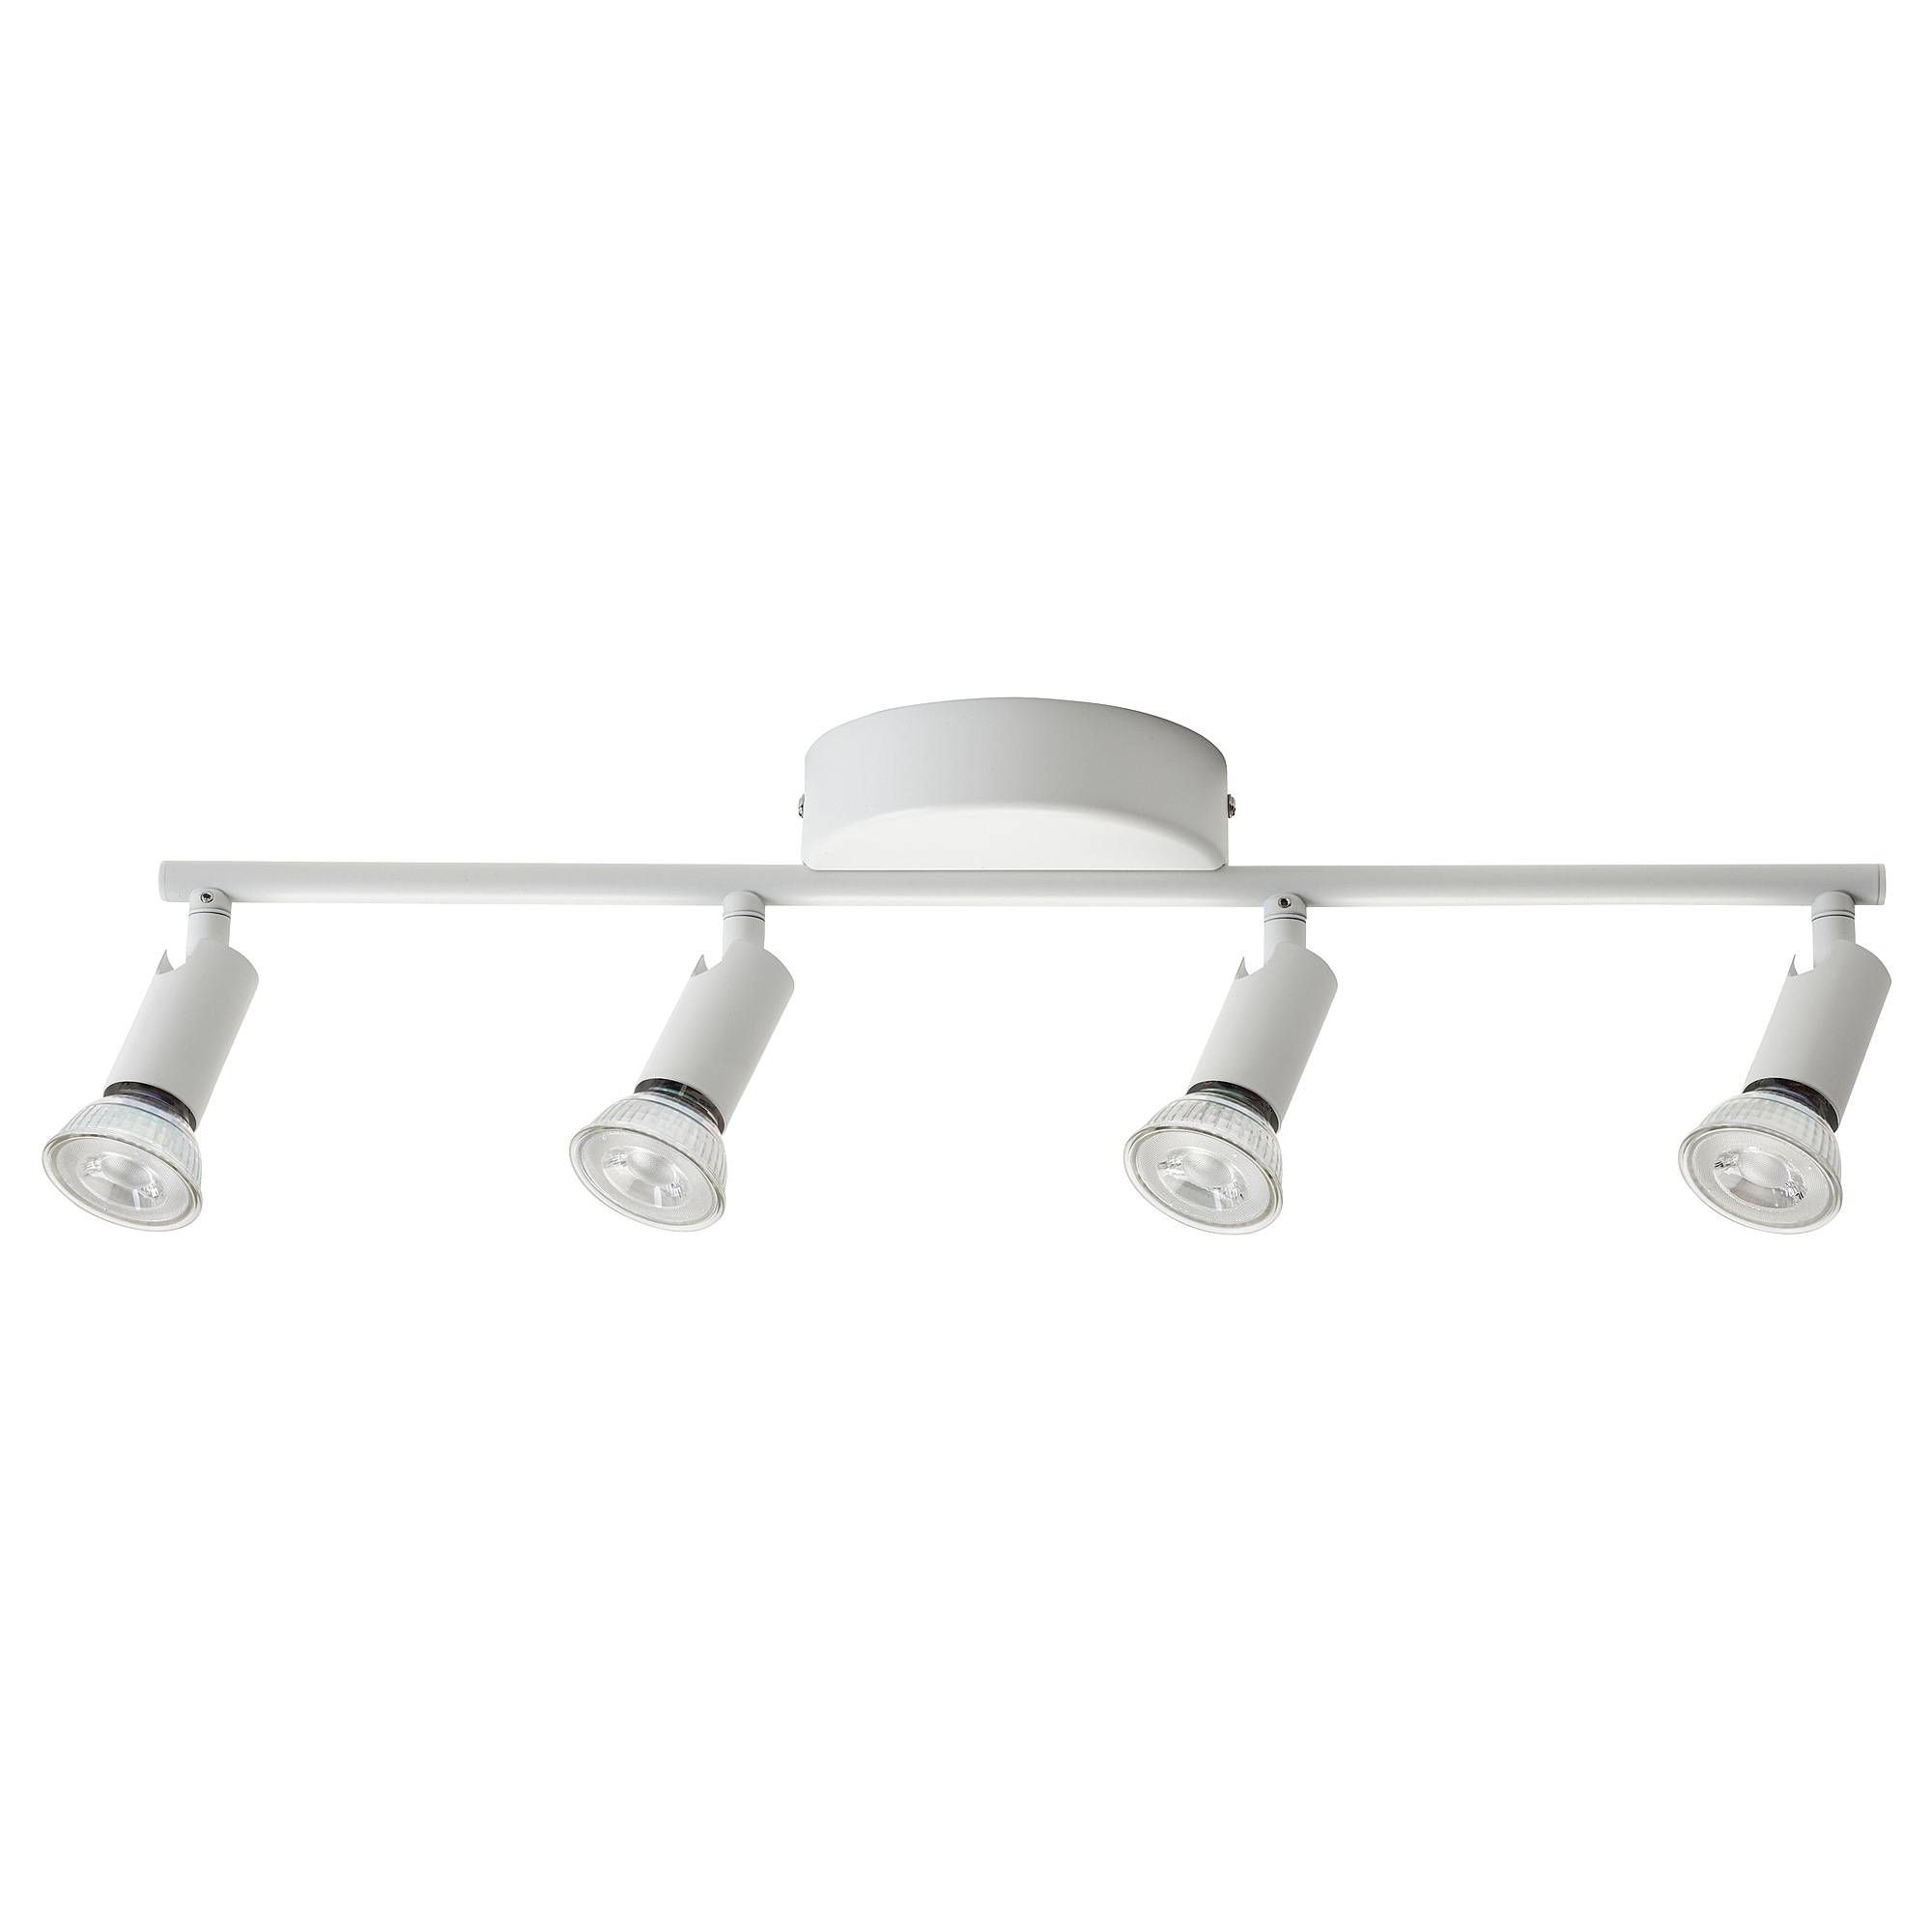 KRUSNATE - 四頭天花射燈, 白色| IKEA 香港及澳門